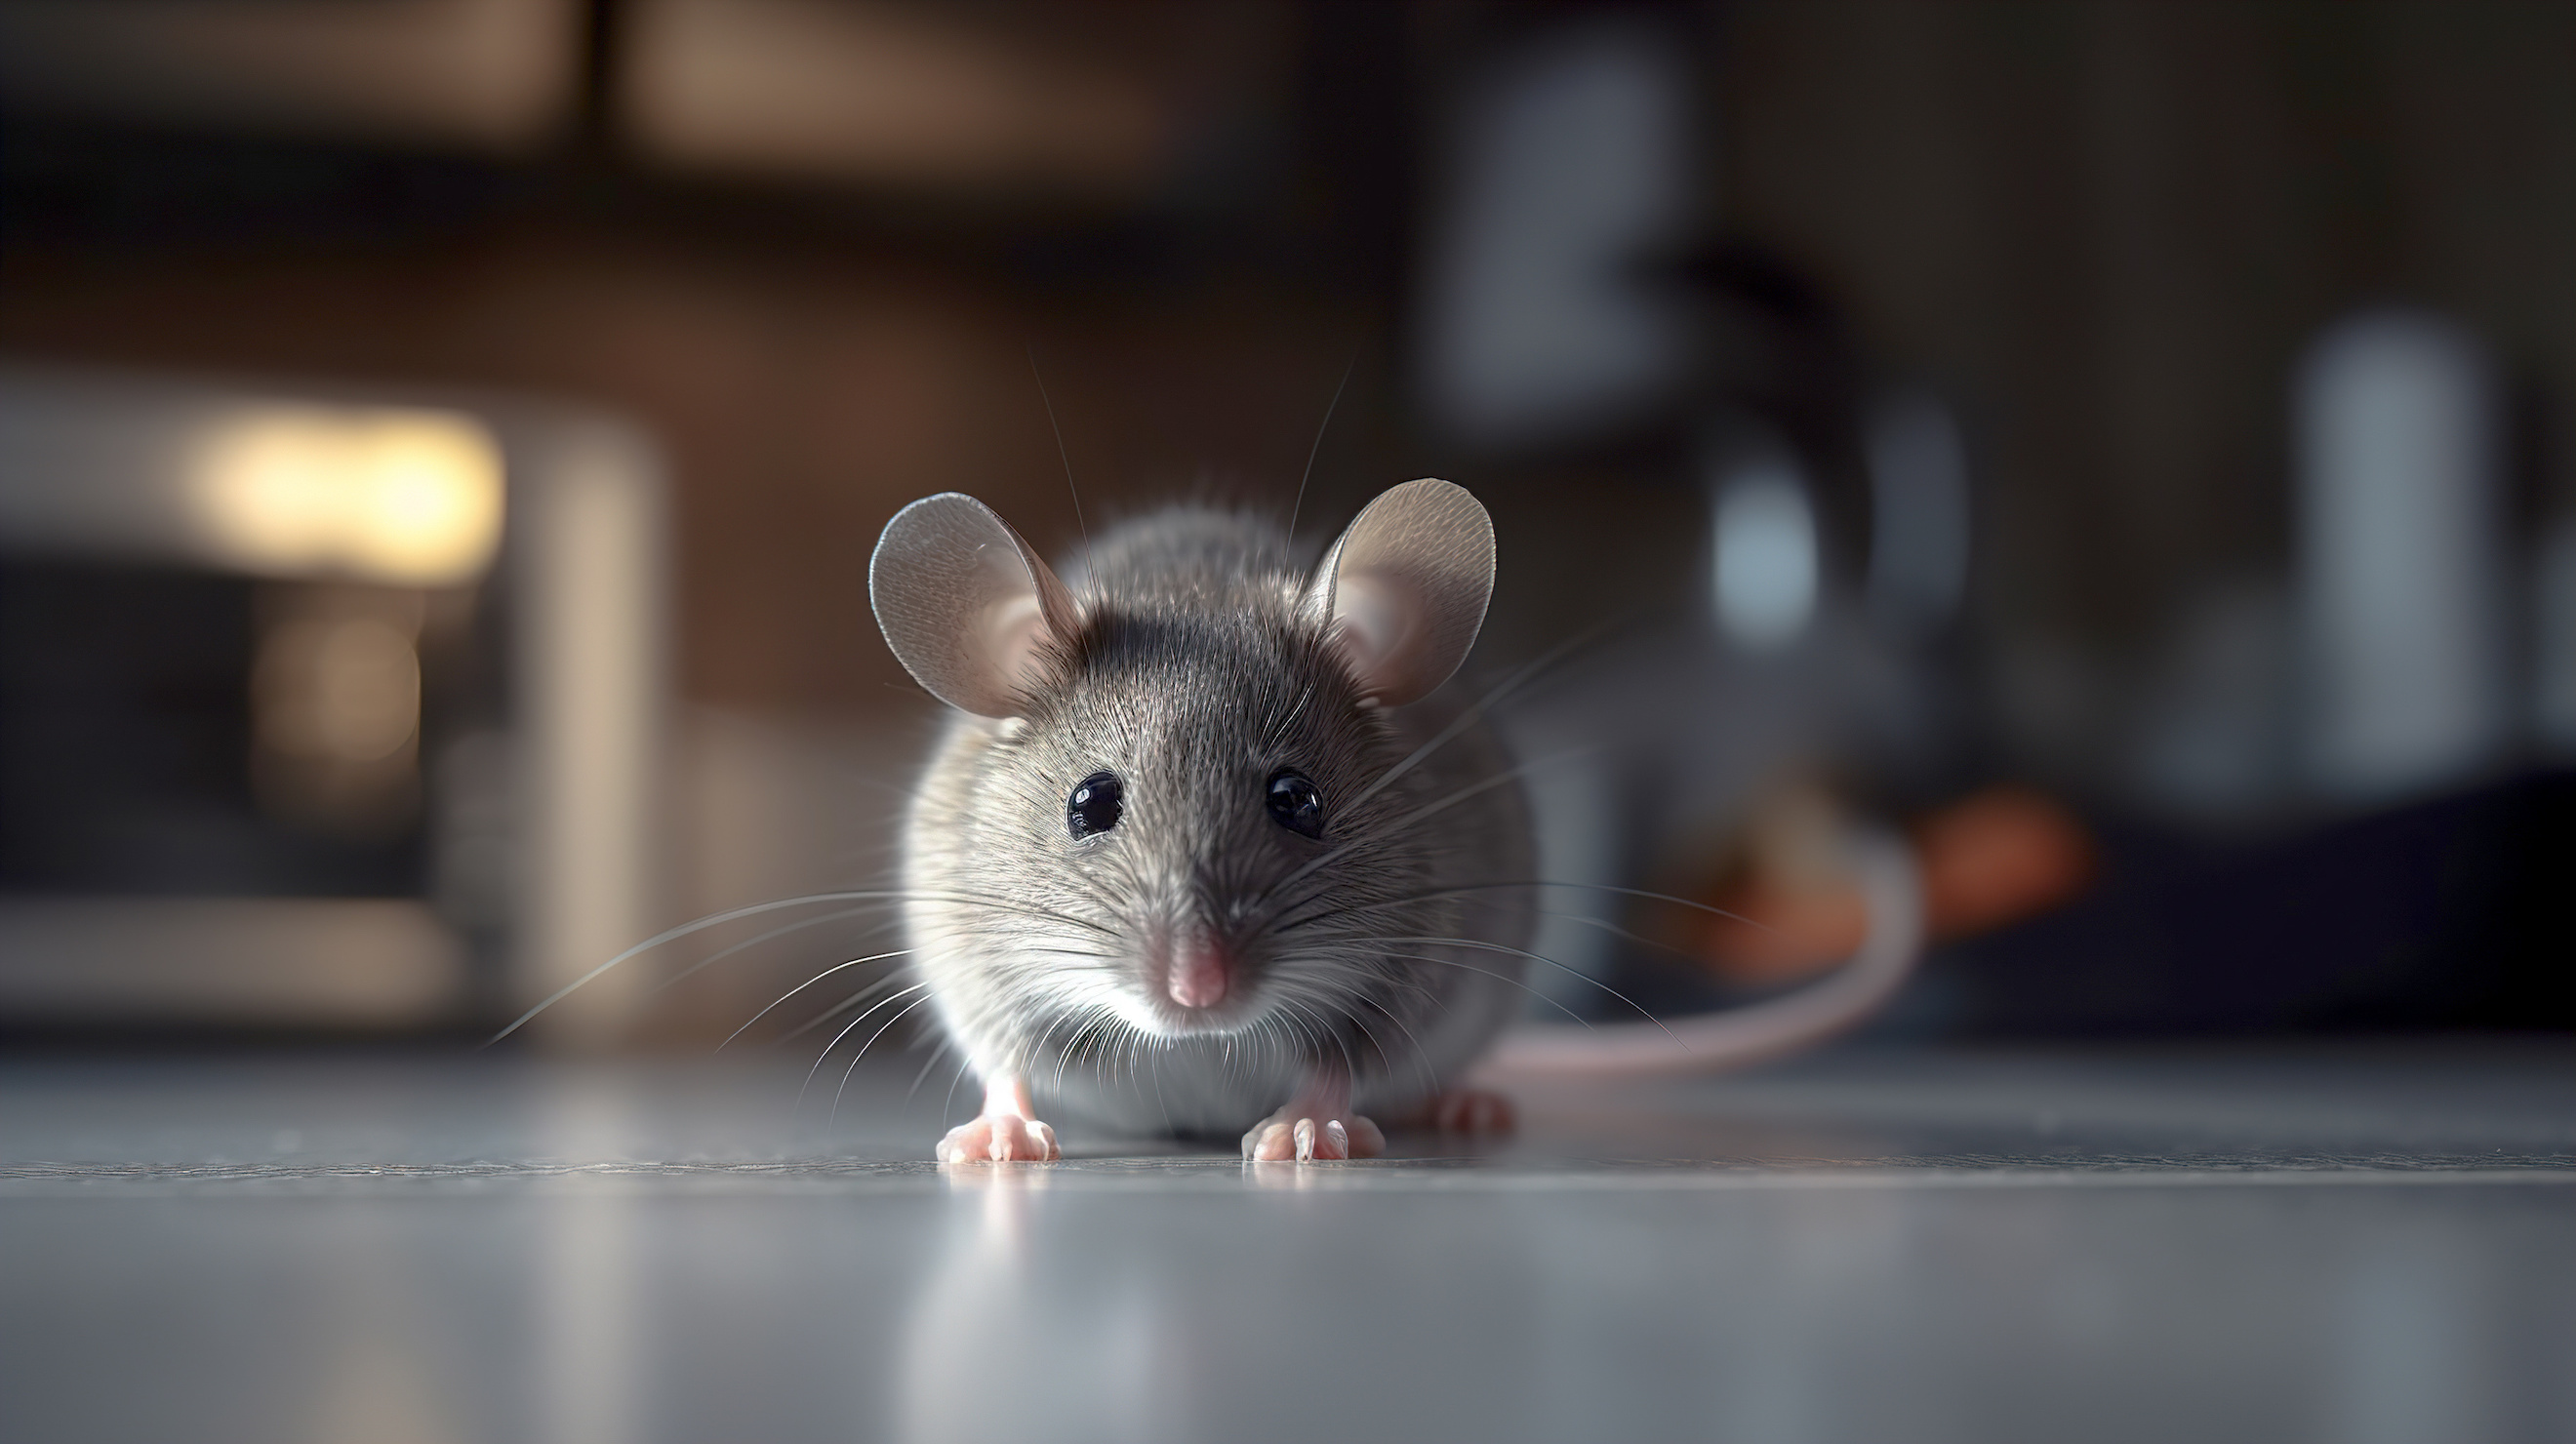 Quand une souris trouve refuge dans une maison, mieux vaut la chasser avant de se retrouver avec une colonie d'indésirables. © Daria17, Adobe Stock